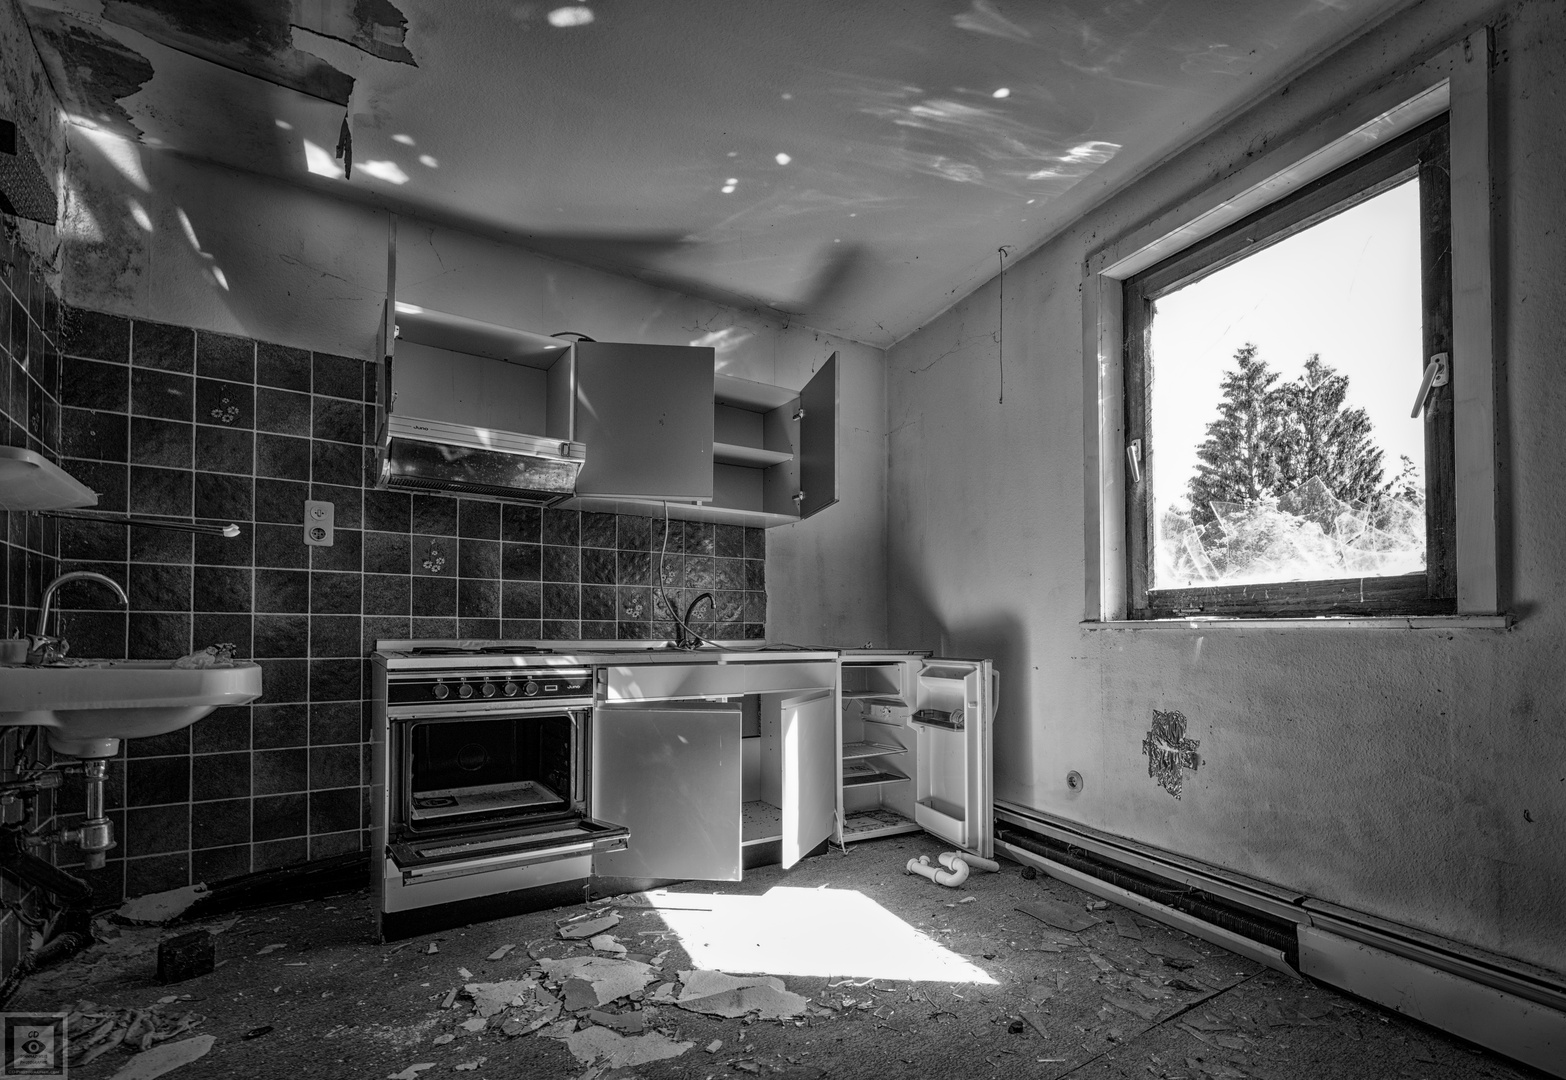 lost kitchen